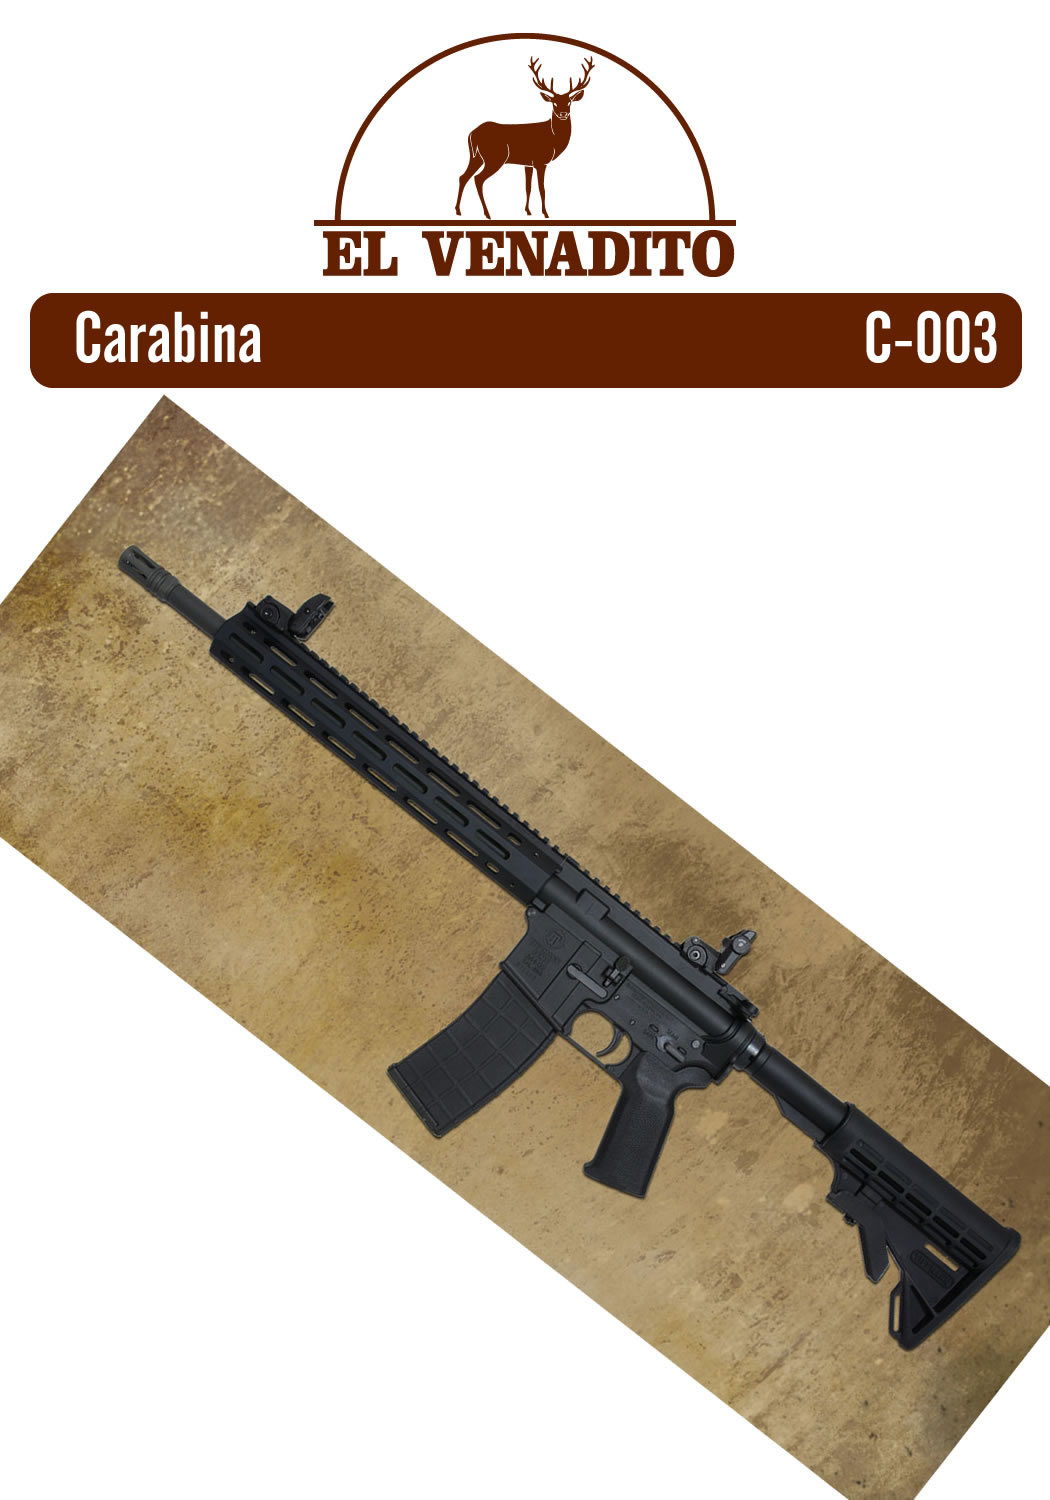 Armas, Rifles, Escopetas, Pistolas, El Venadito Carchá